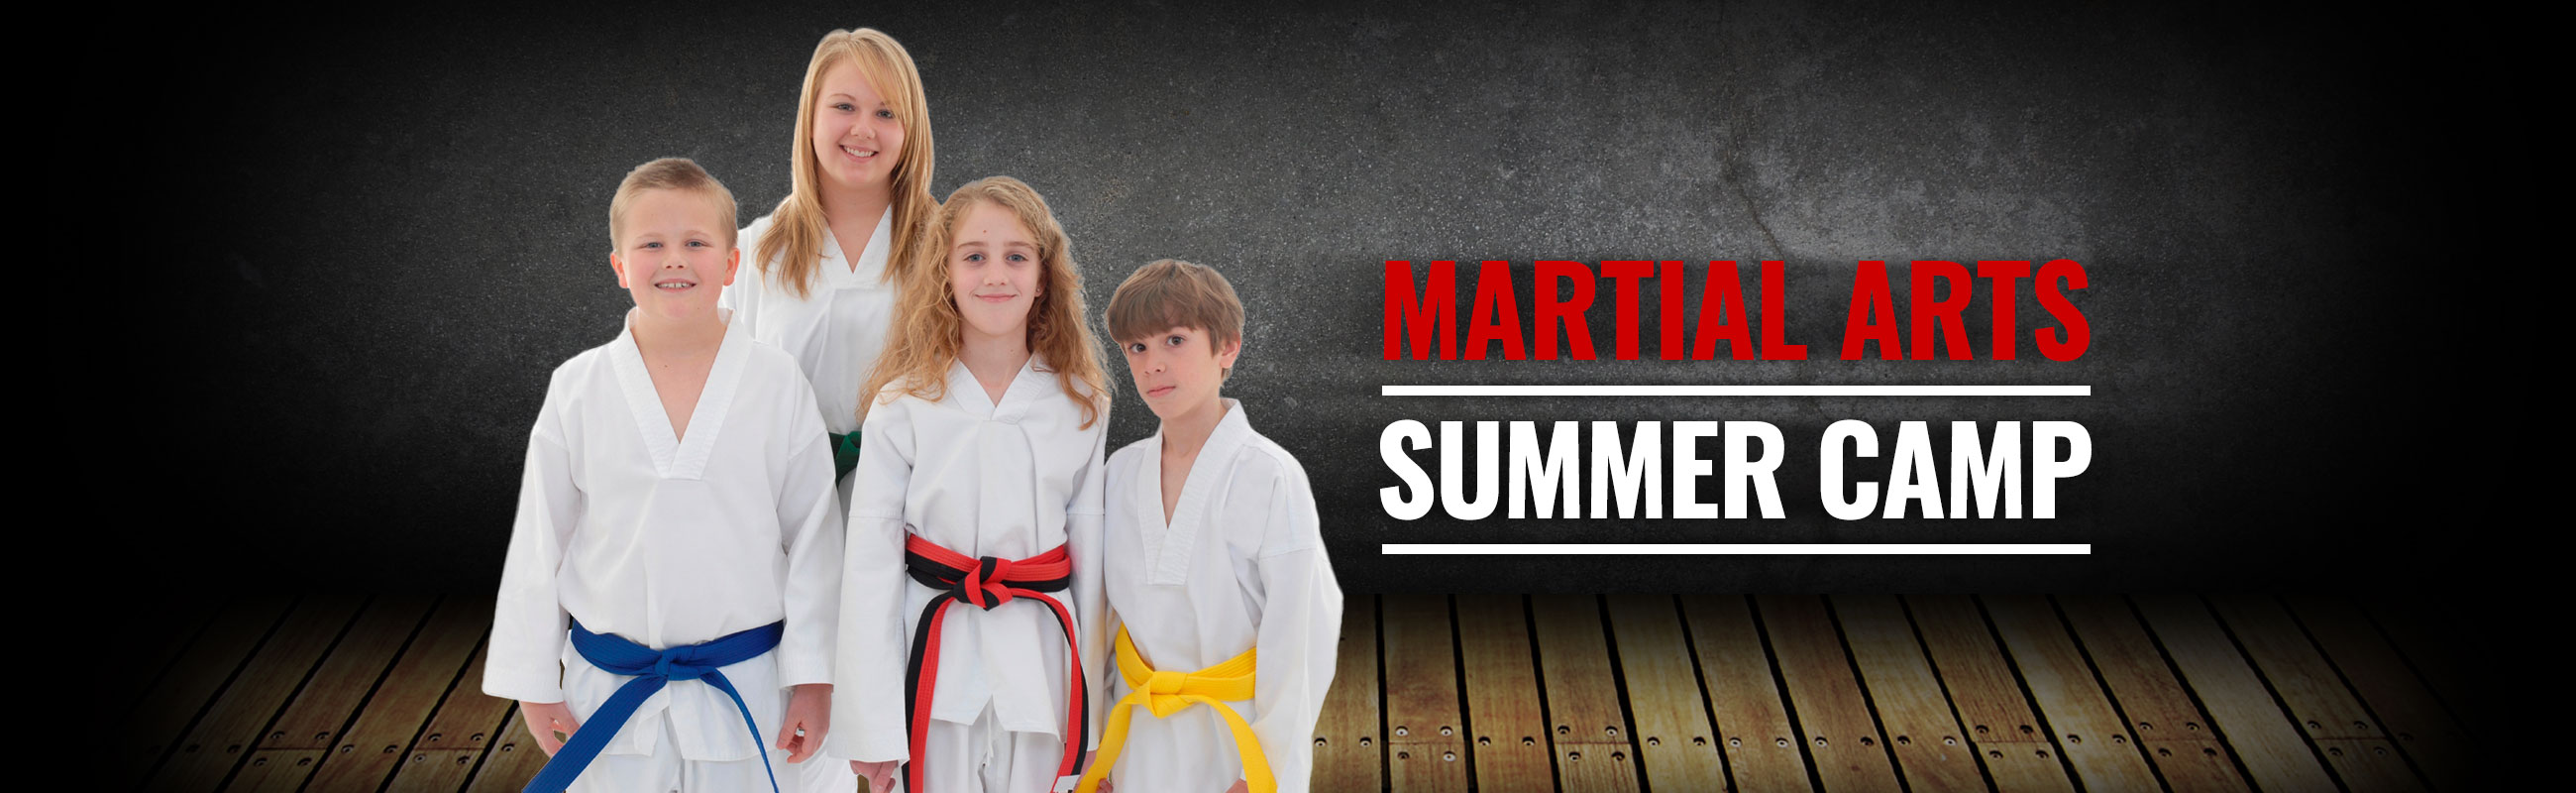 martial arts summer camp